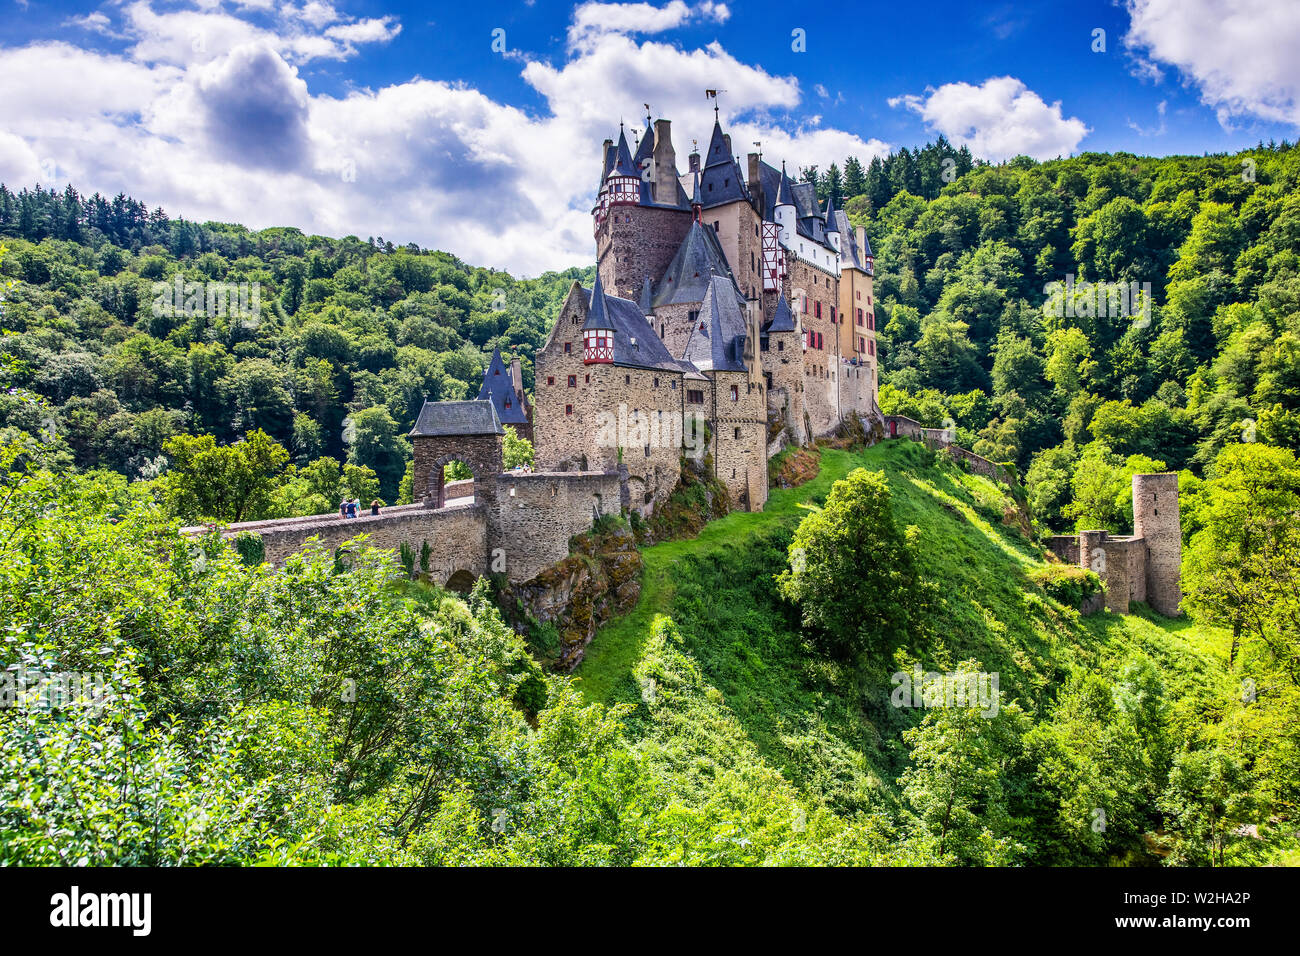 Château d'Eltz ou Burg Eltz. Château médiéval sur les collines au-dessus de la Moselle. La Rhénanie-Palatinat en Allemagne. Banque D'Images